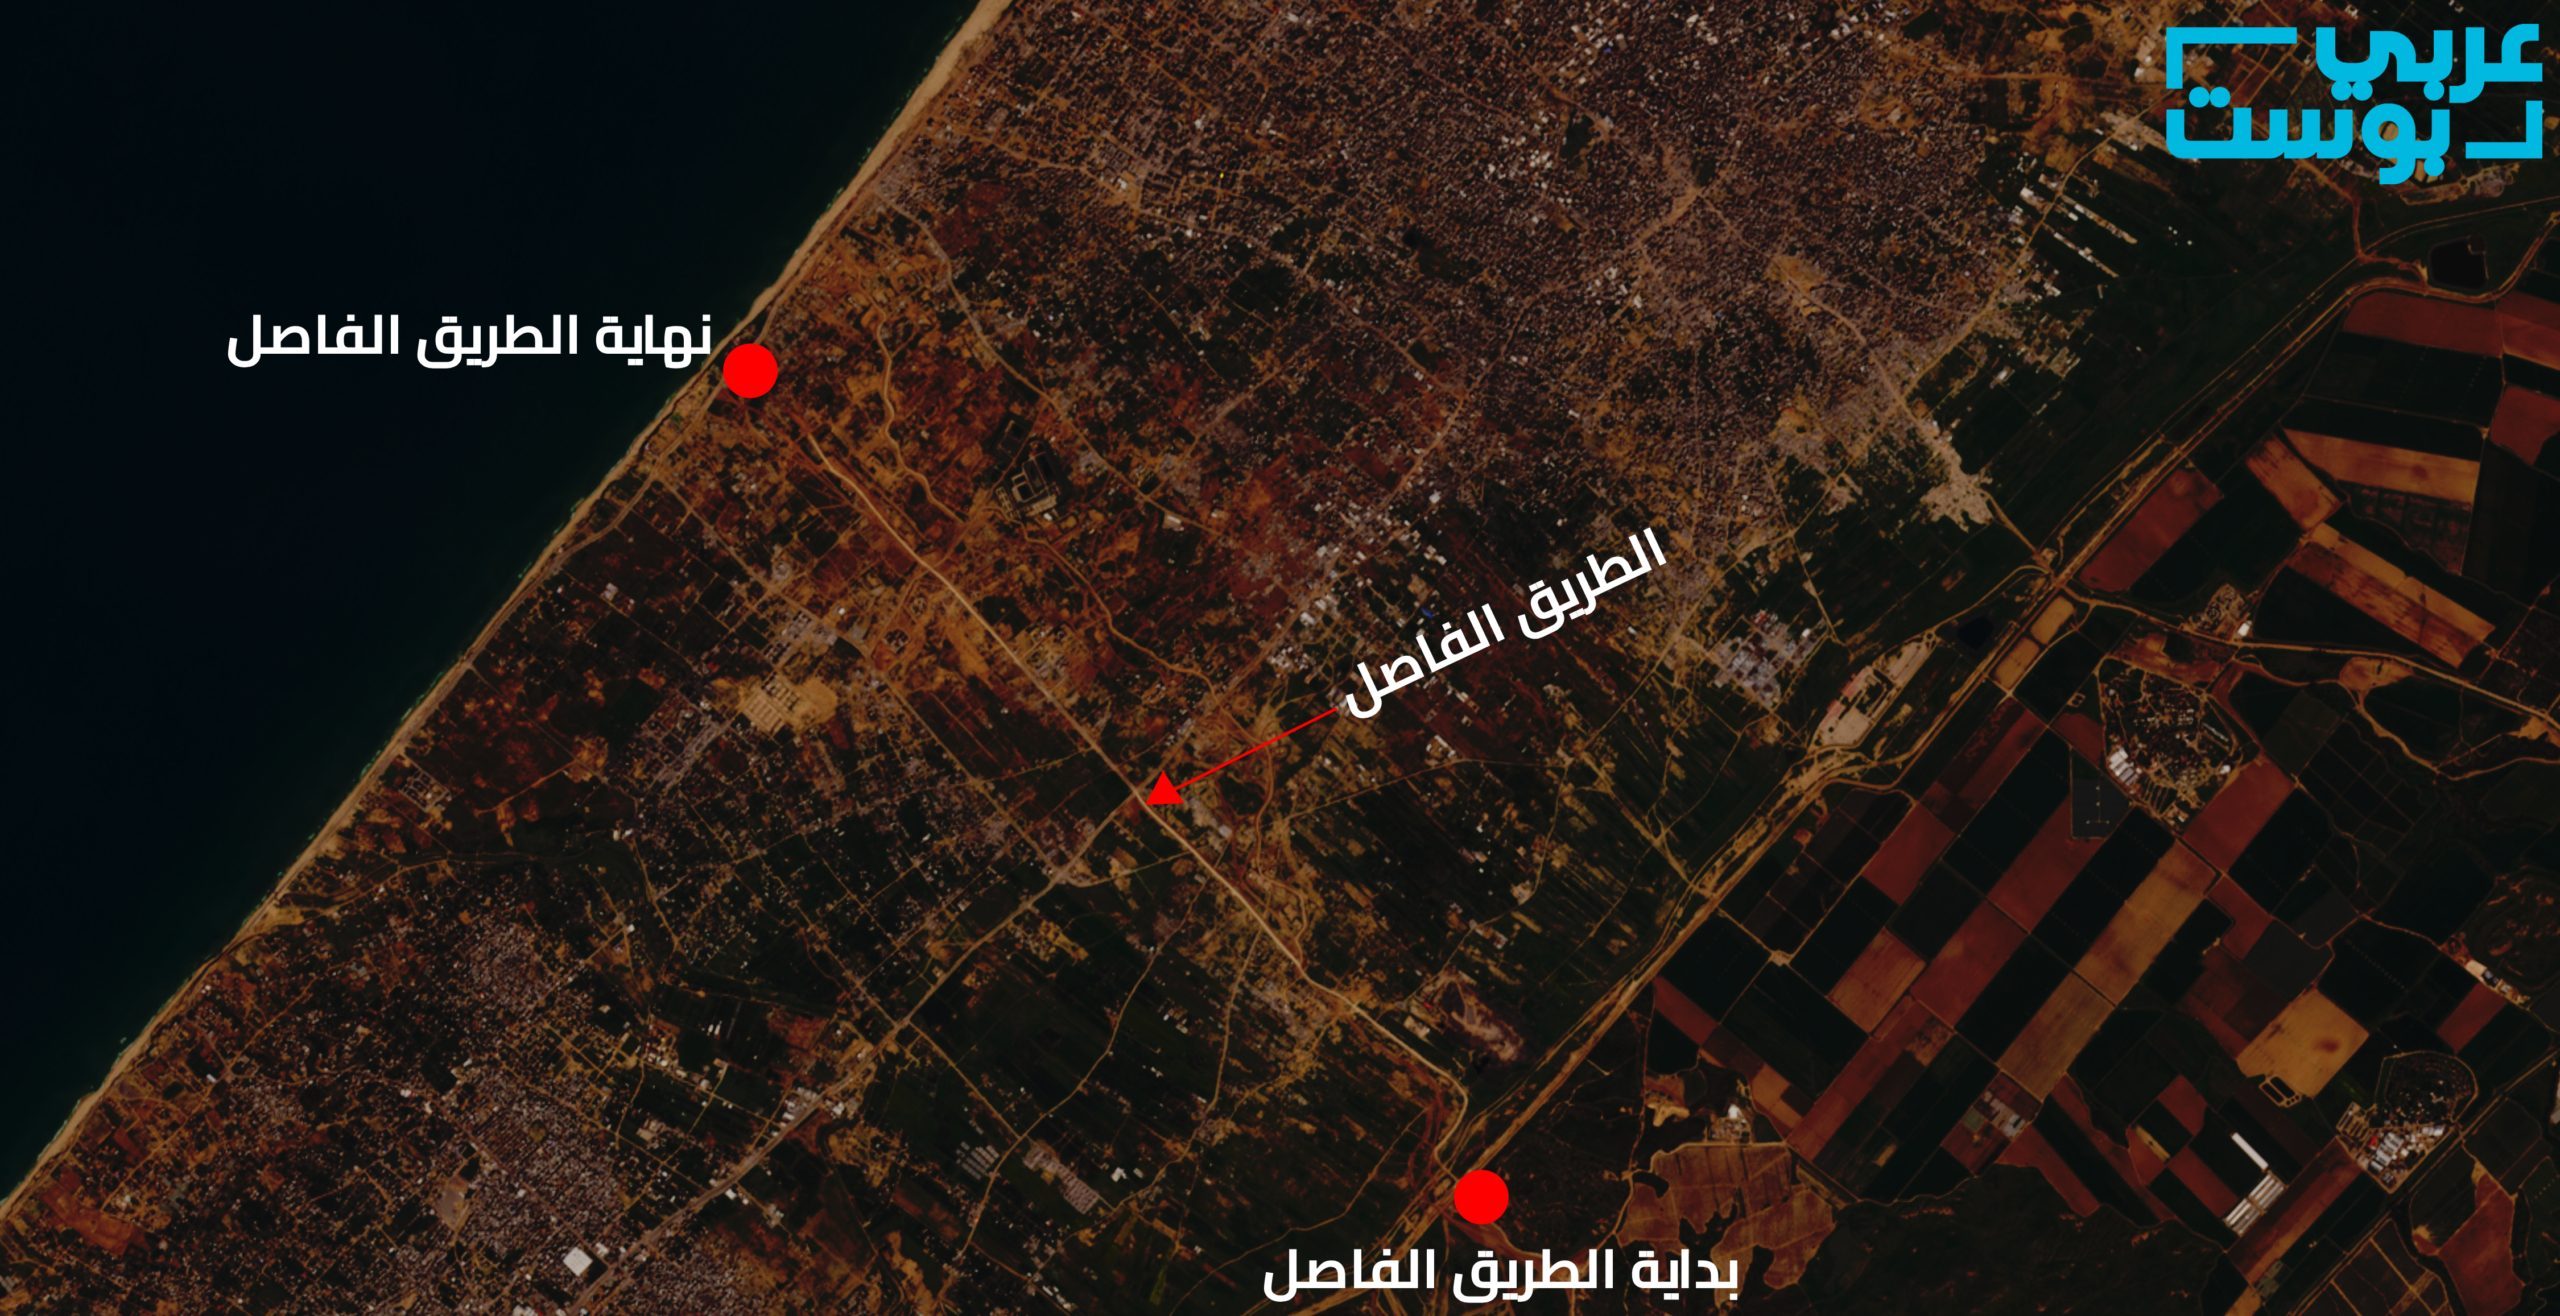 الطريق الذي يقسم شمال قطاع غزة عن جنوبه - سنتنل - عربي بوست